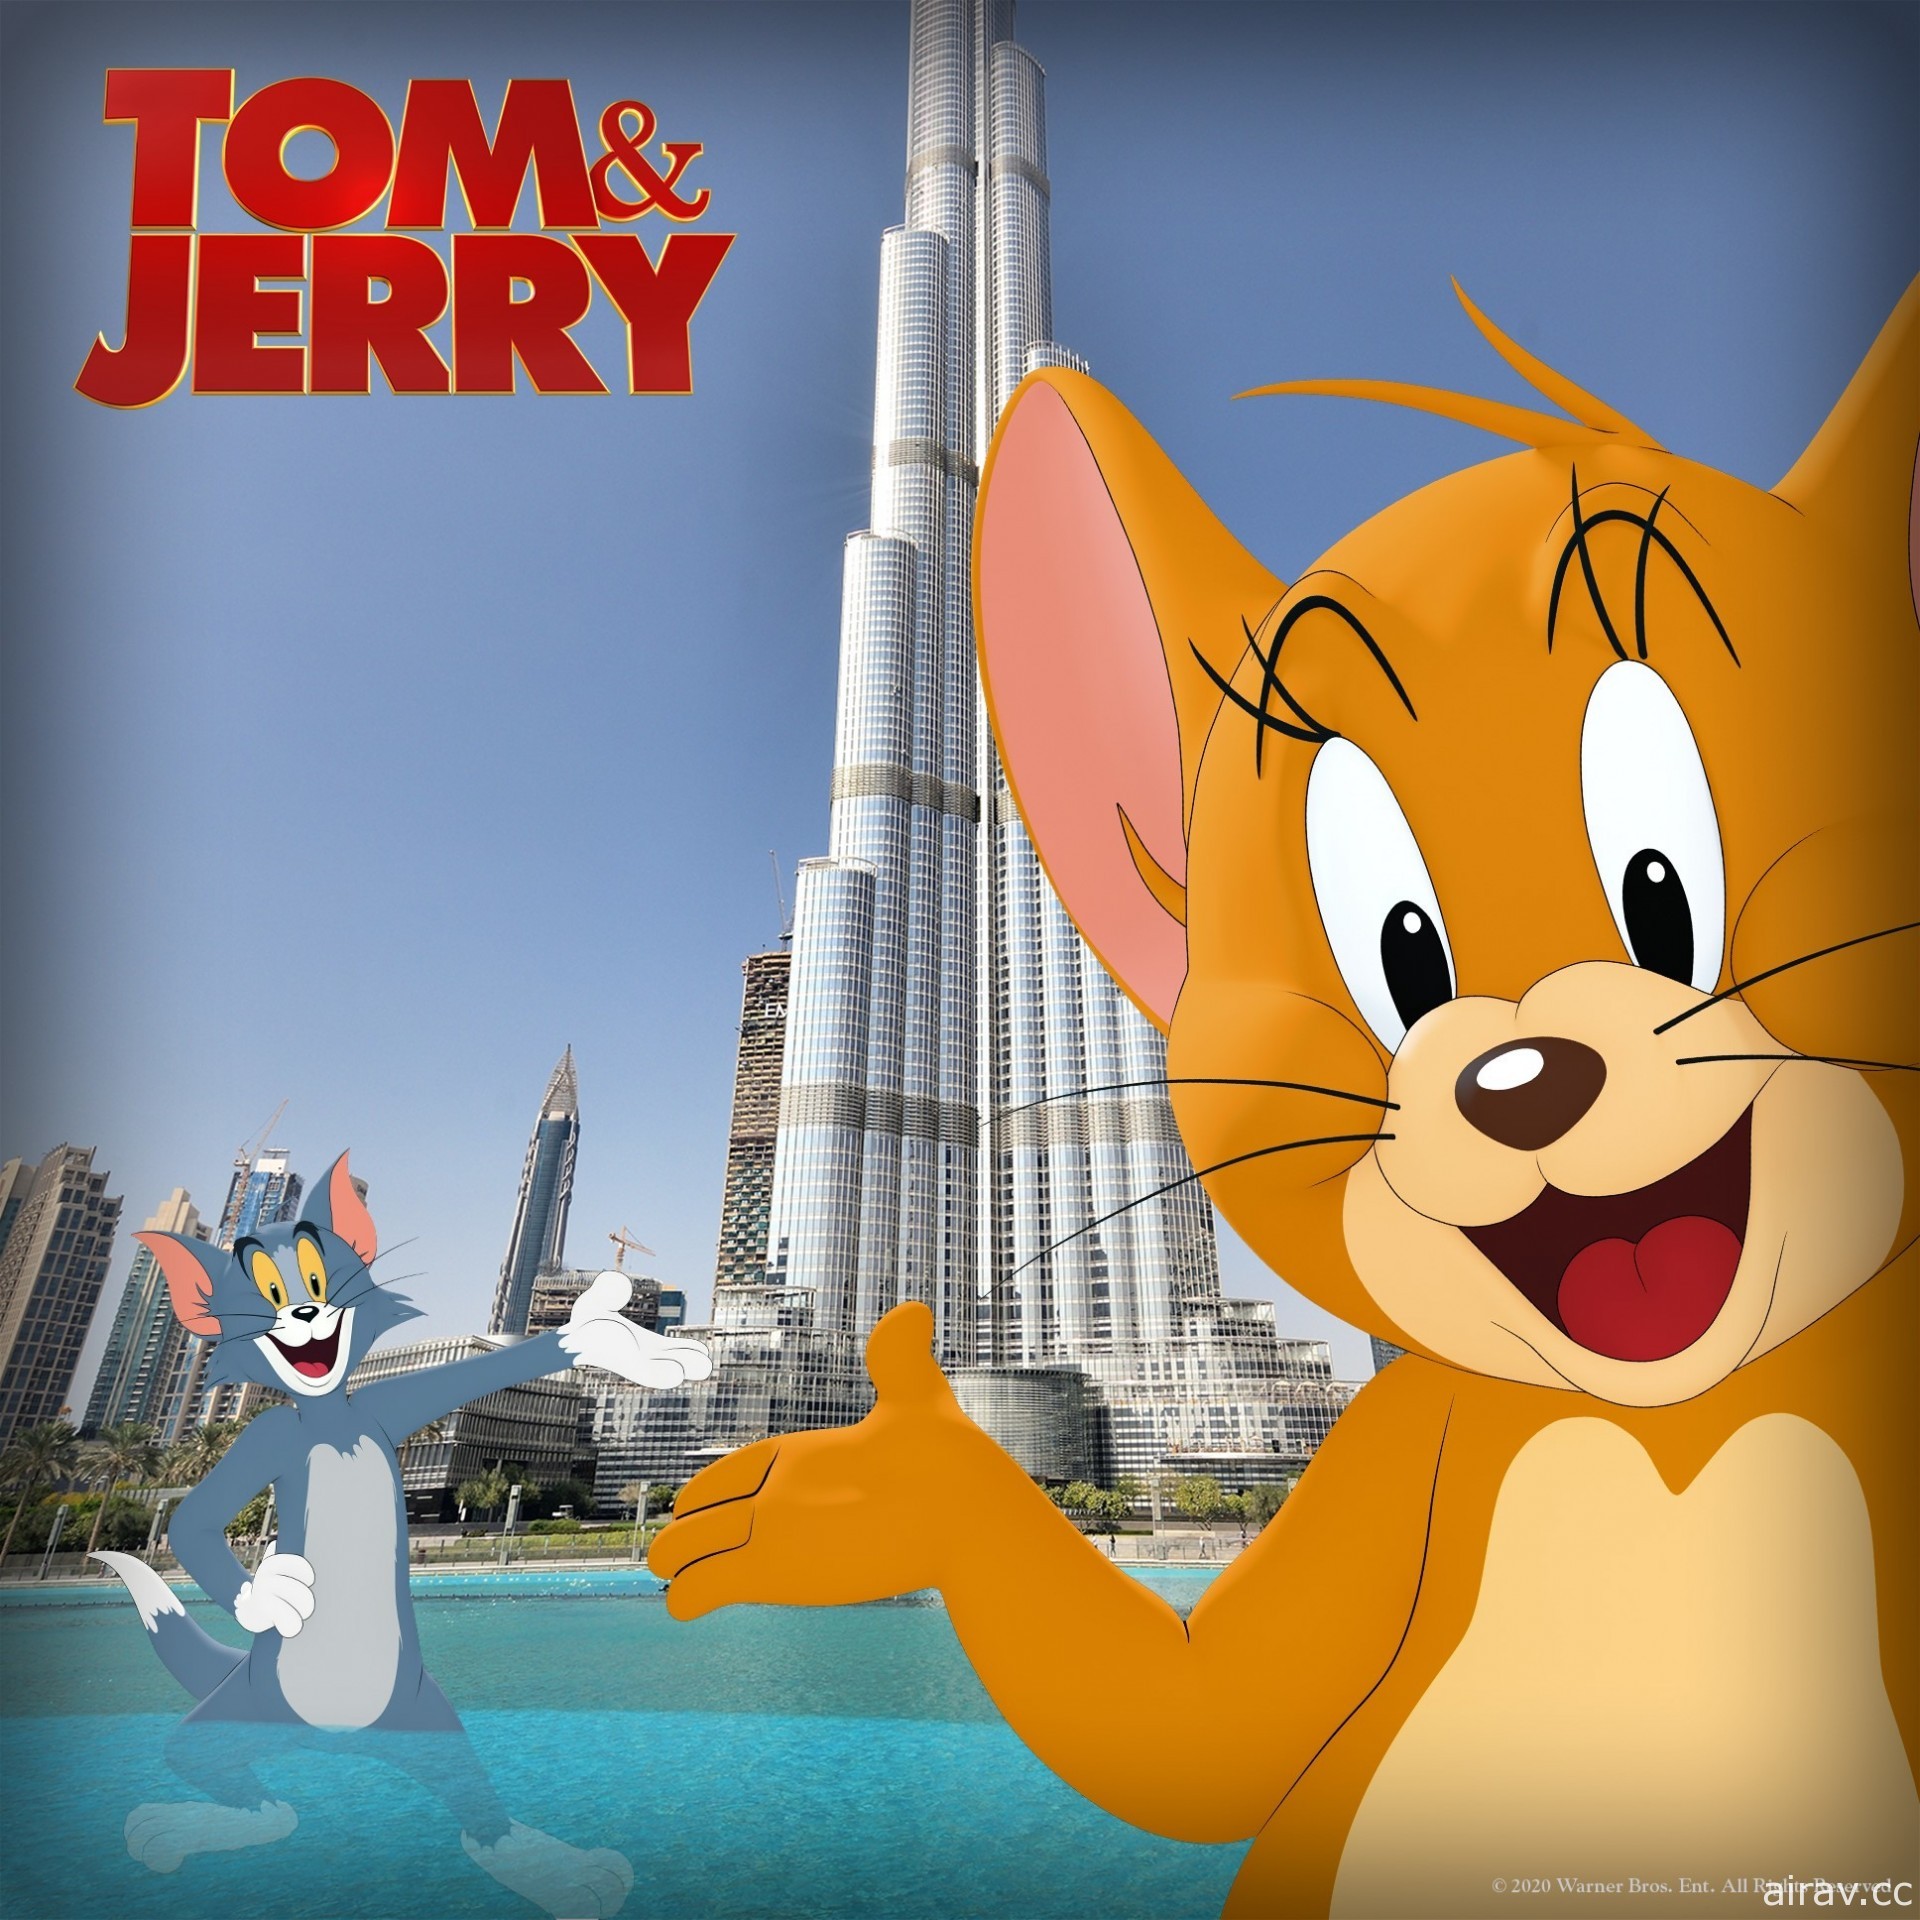 克蘿伊摩蕾茲參演《湯姆貓與傑利鼠》電影預告宣傳影片釋出 2021 年上映